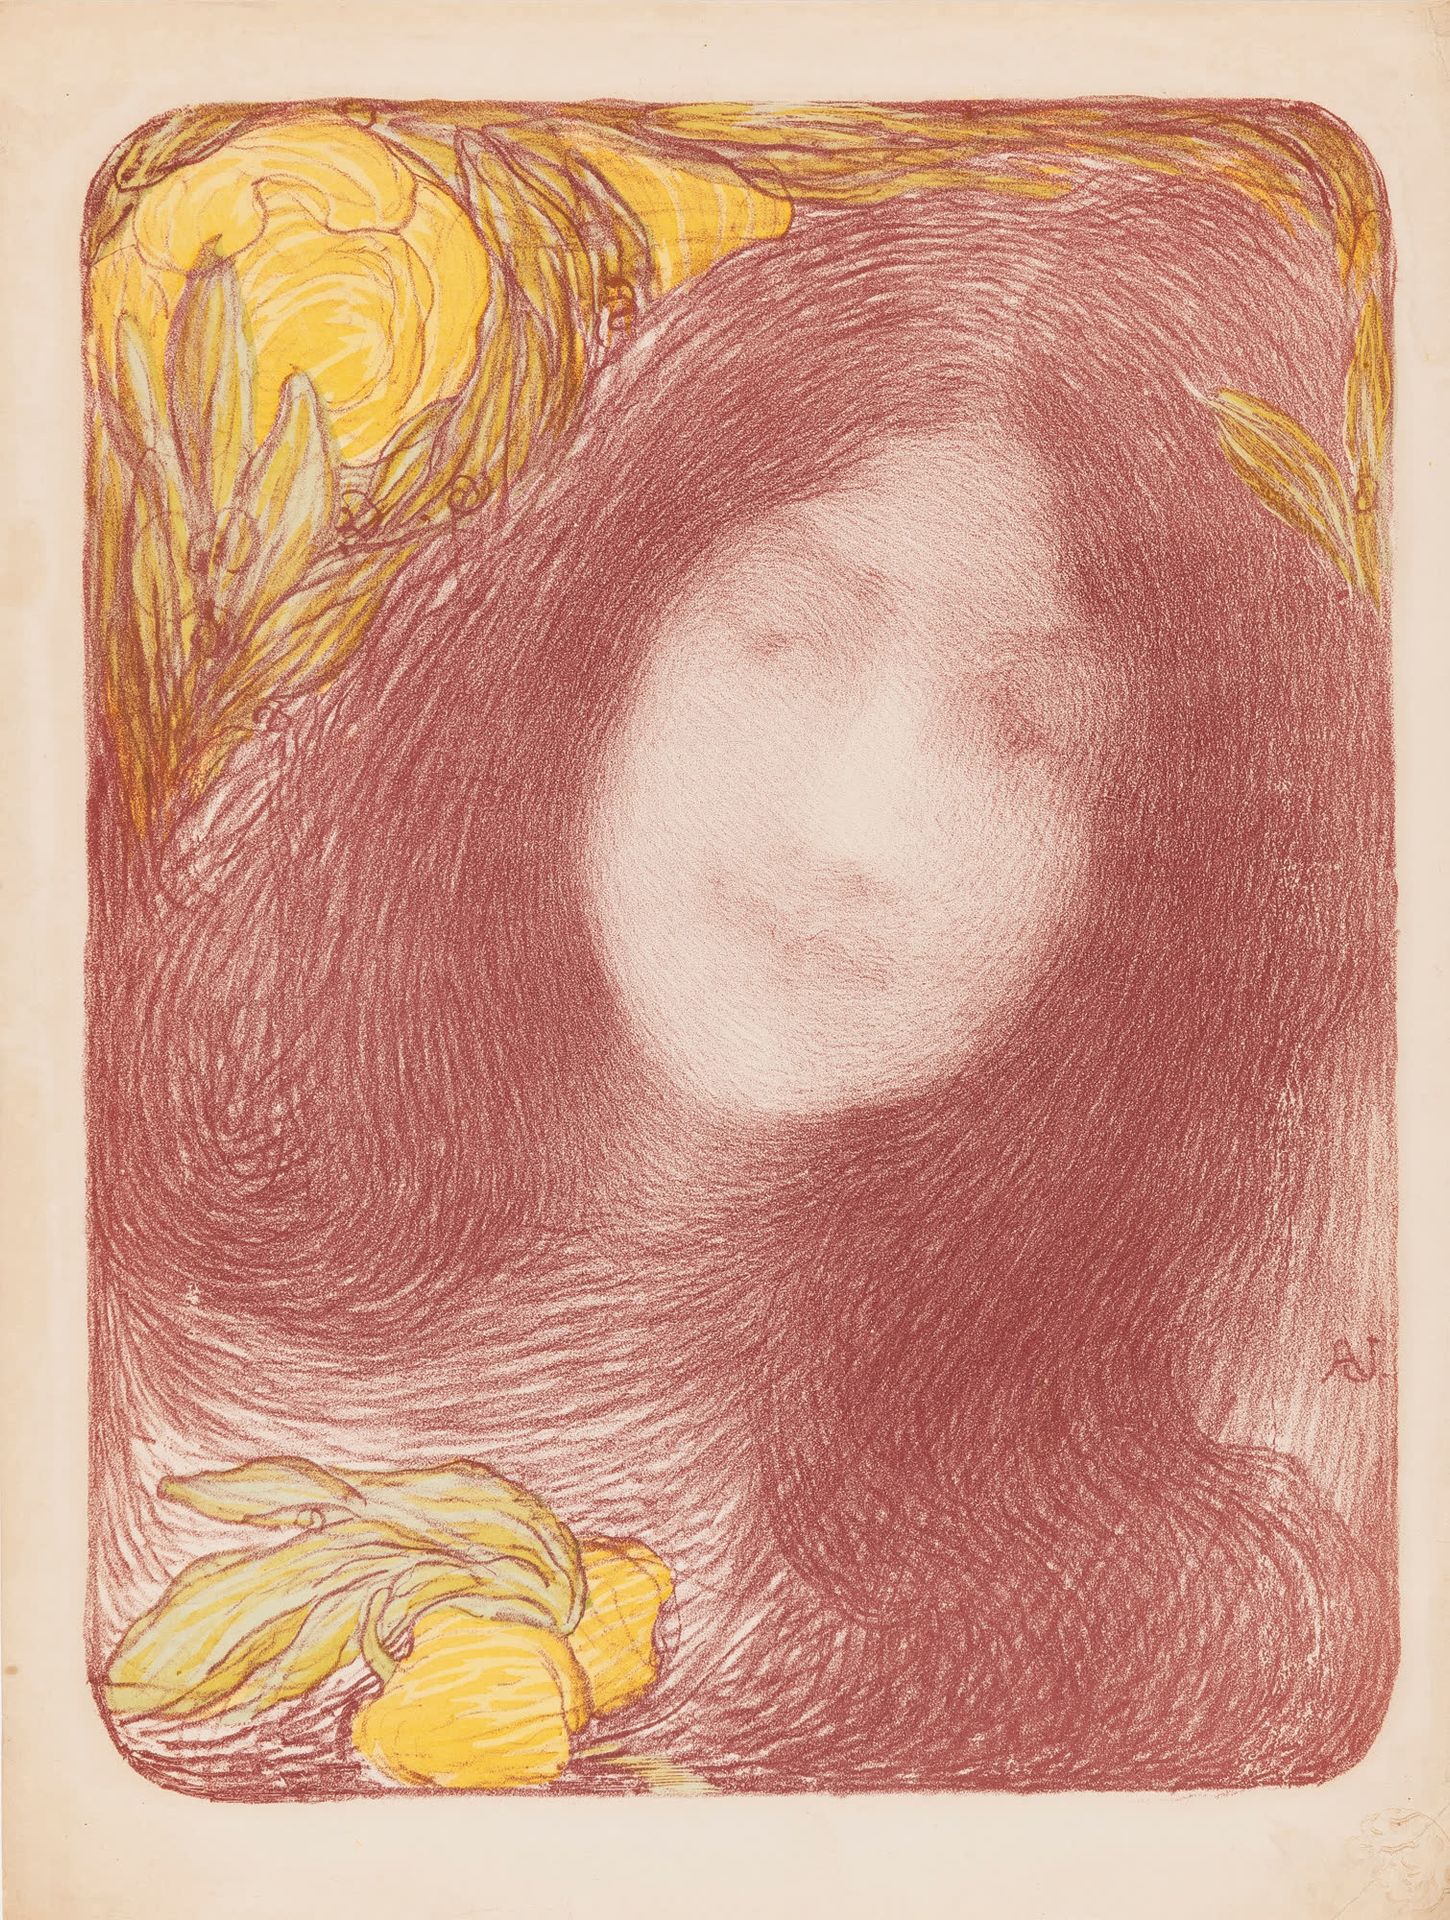 EDMOND AMAN JEAN (1856-1936) Sous les fleurs, 1896.
Farblithografie.
In der Plat&hellip;